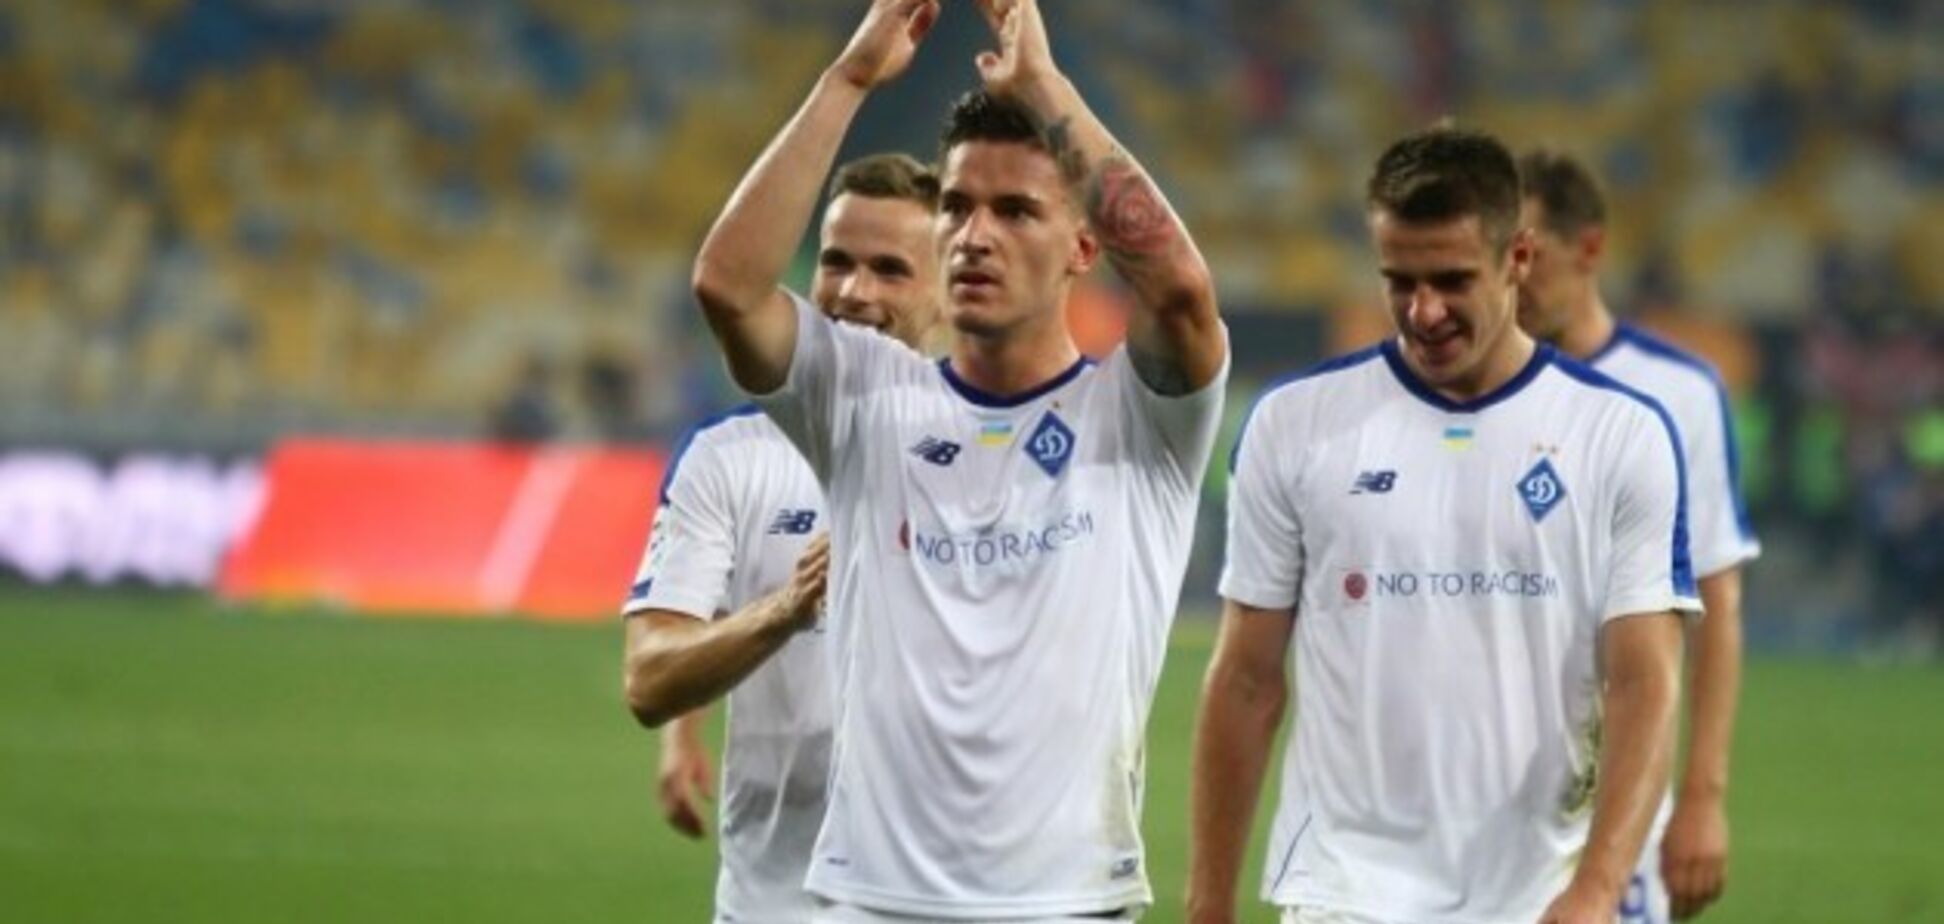 СМИ: 'Динамо' потеряло лидера команды перед матчем Лиги Европы